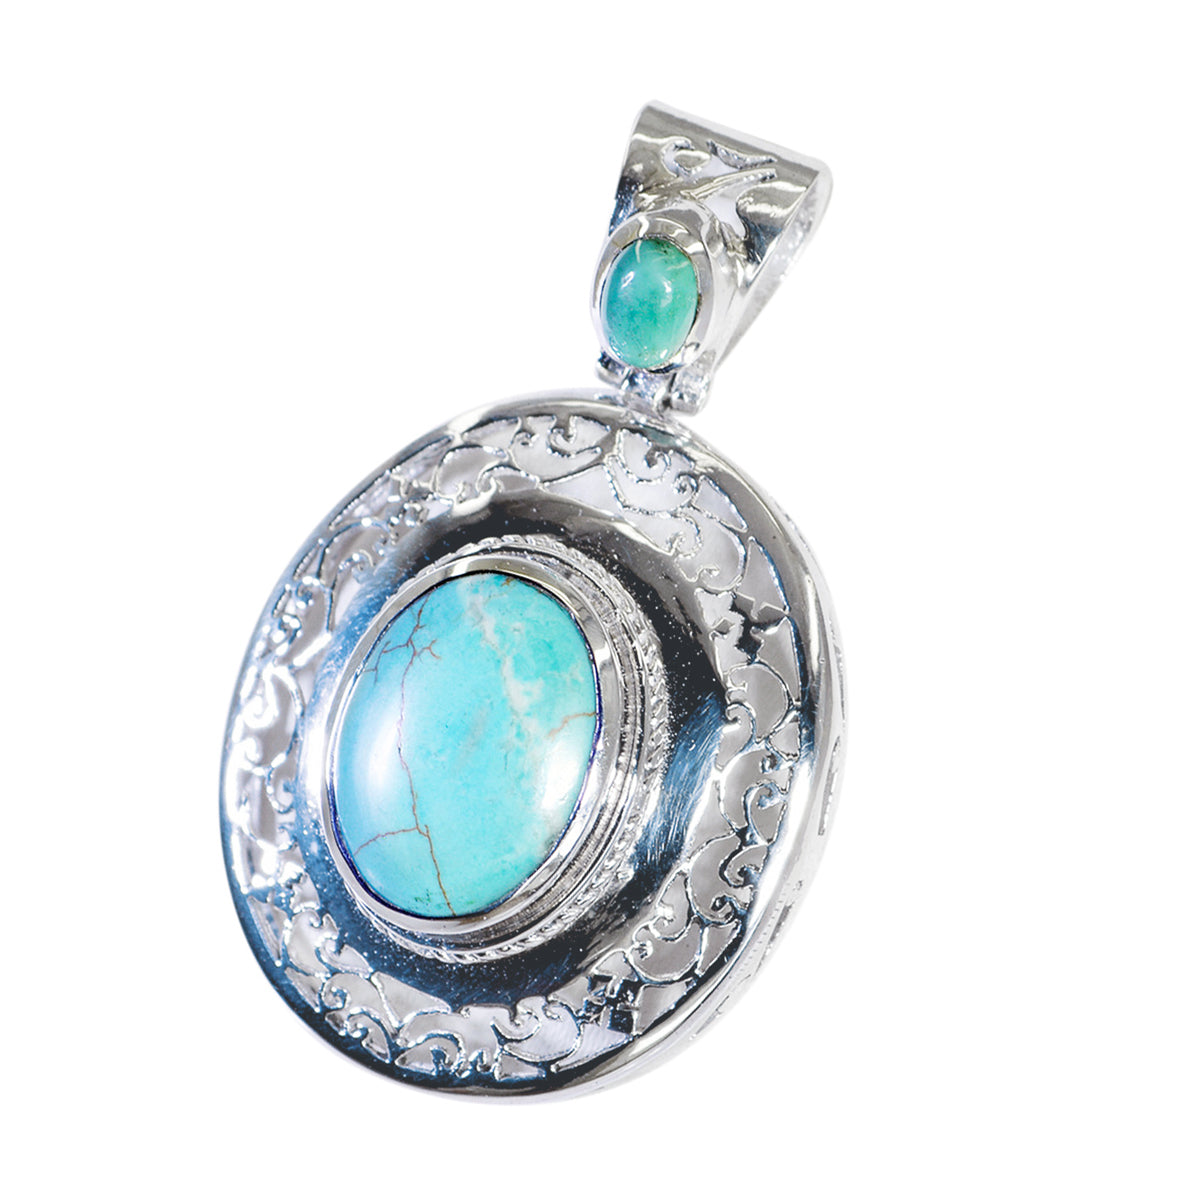 Riyo magnifiques pierres précieuses ovale cabochon bleu turquoise pendentif en argent massif cadeau pour le vendredi saint